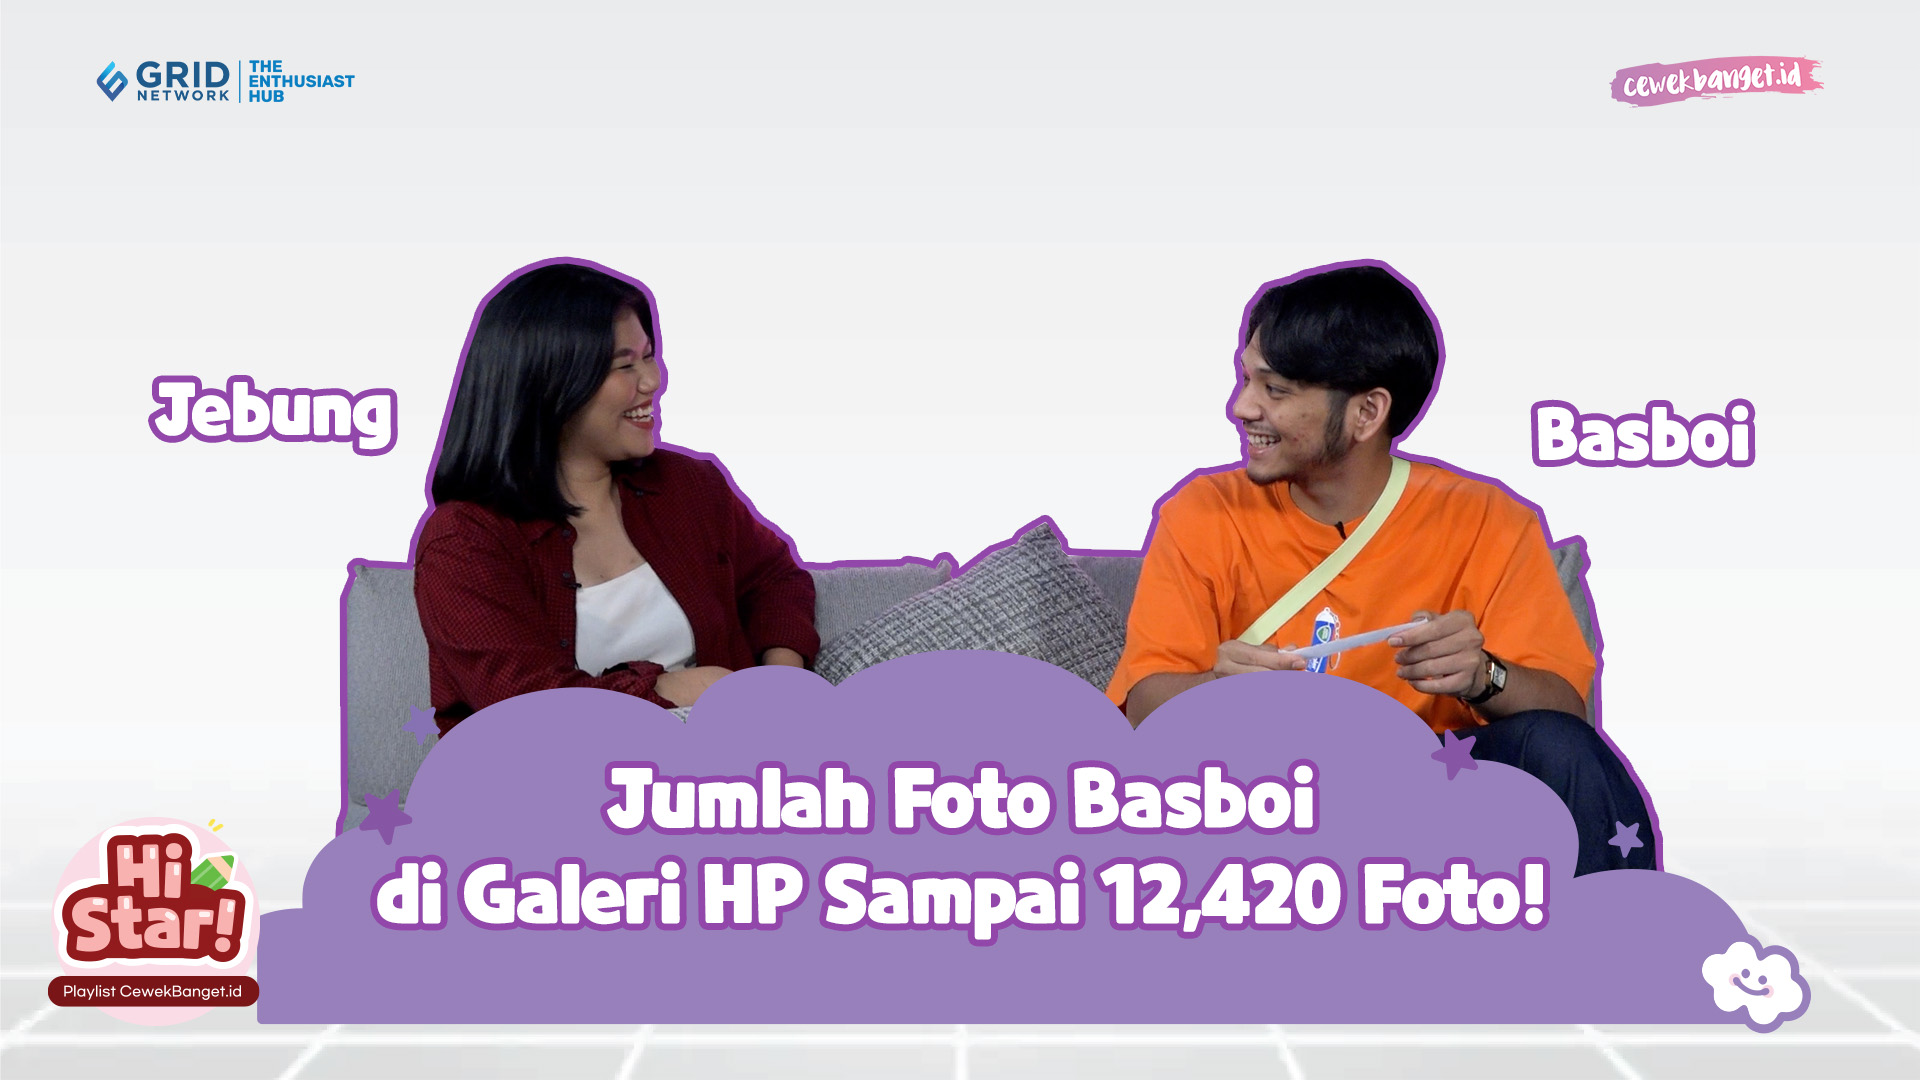 JUMLAH FOTO BASBOI DI GALERI HP SAMPAI 12.420 FOTO! | RANDOM QUESTIONS PART 2